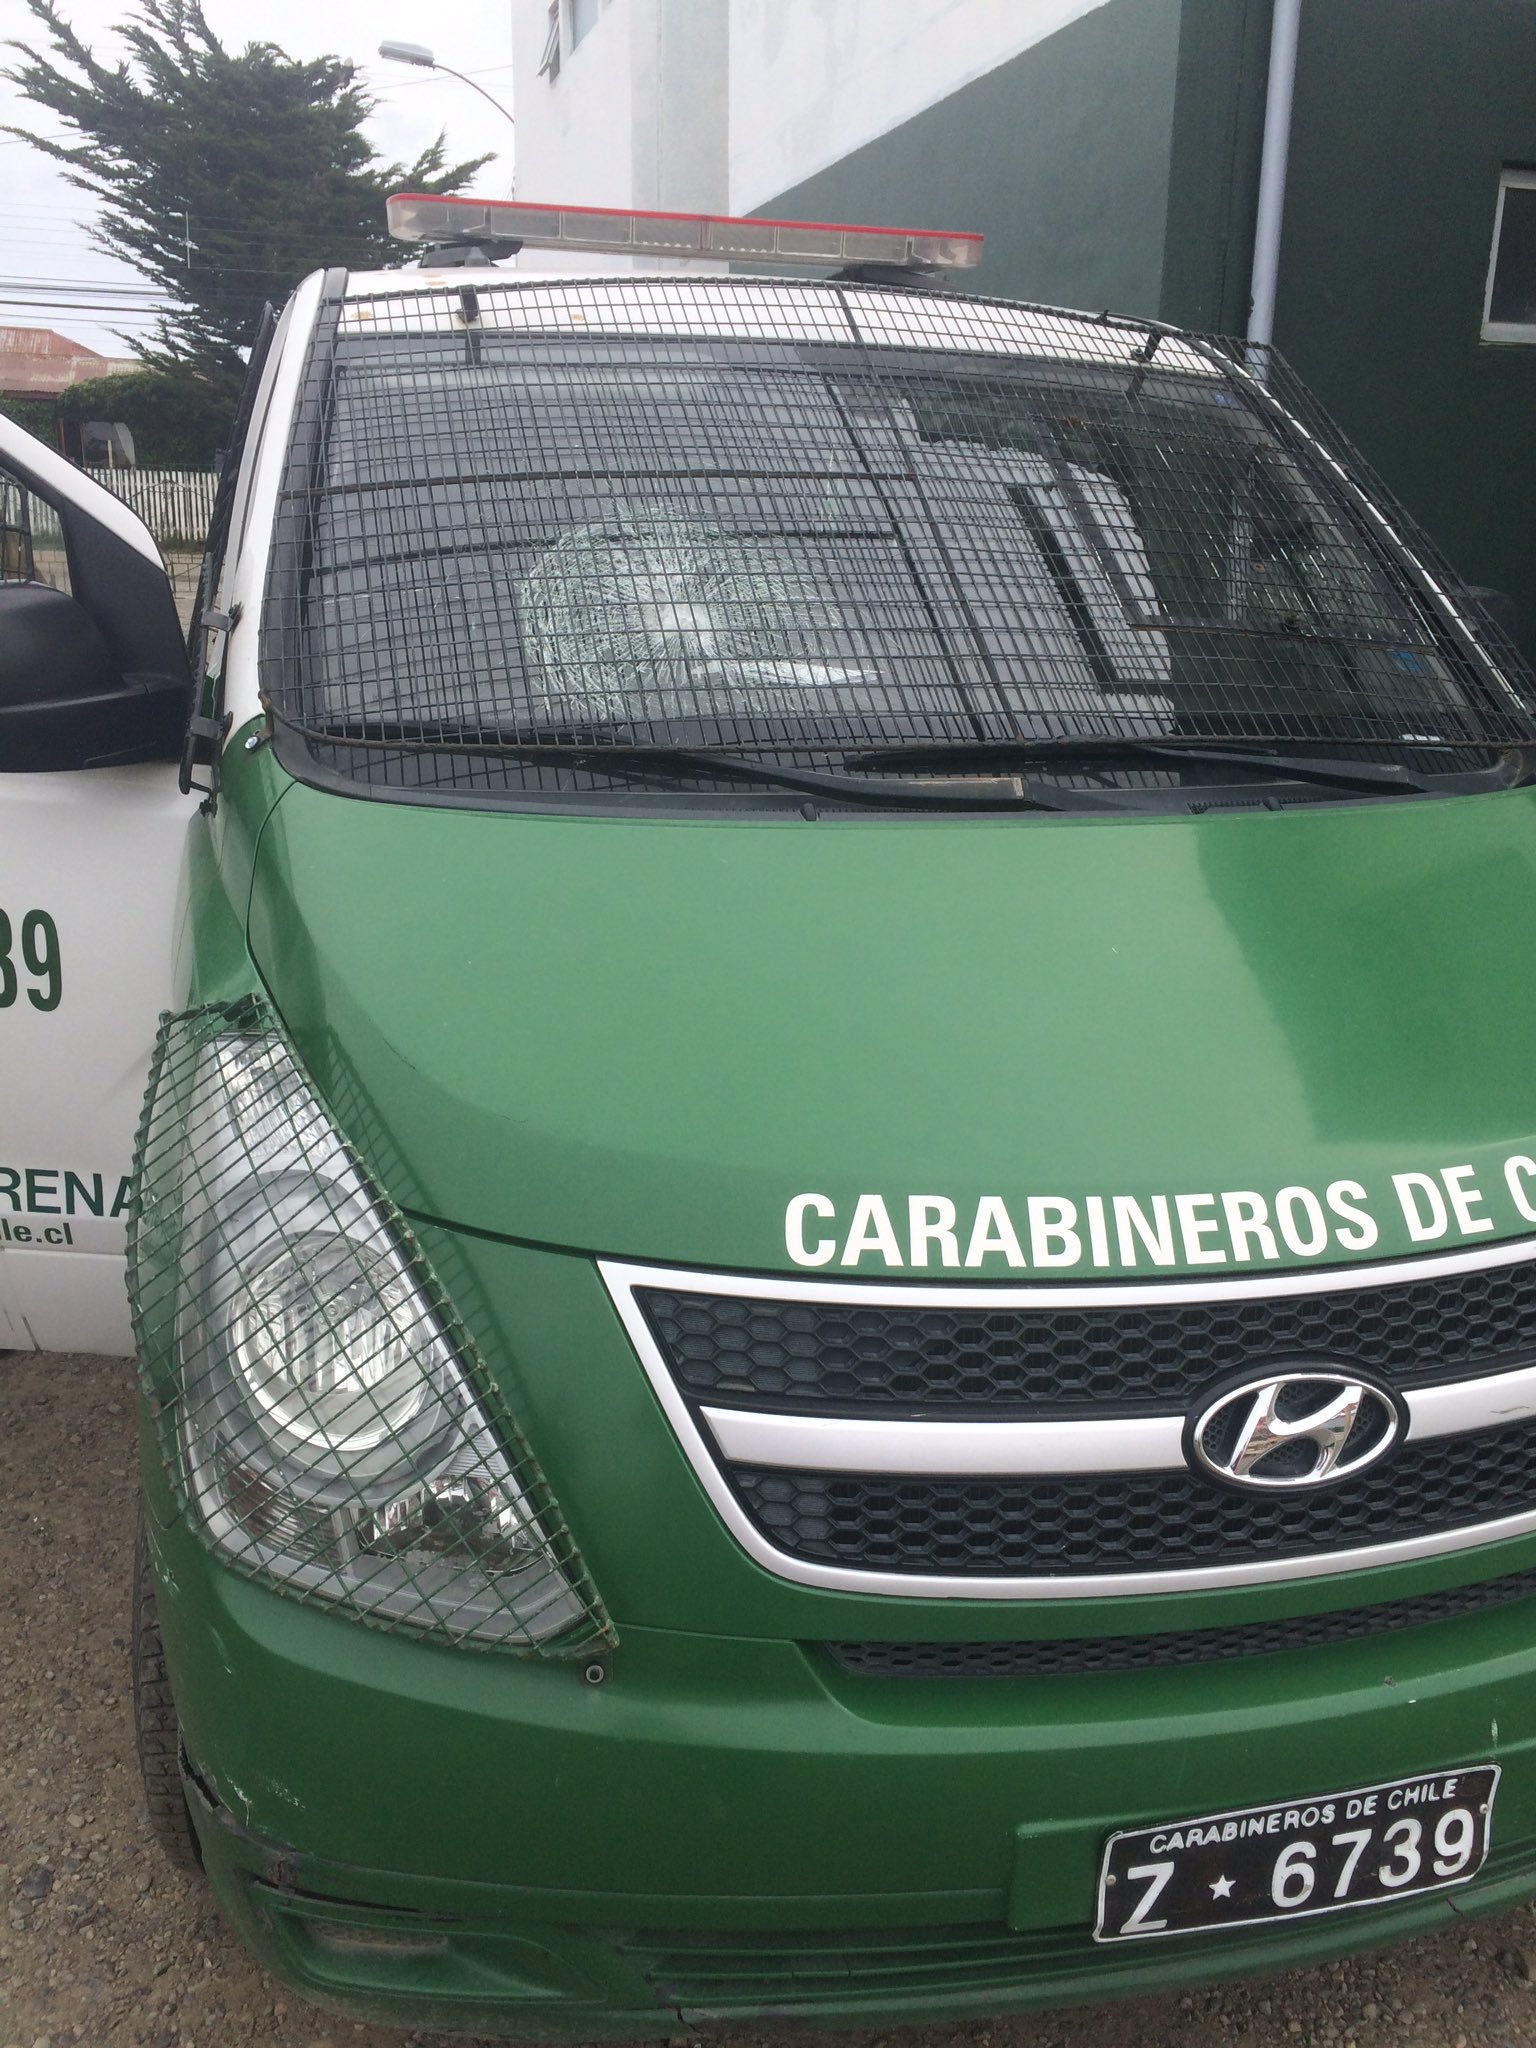 11 vehículos policiales de Carabineros han resultado con daños durante la presente semana en Punta Arenas